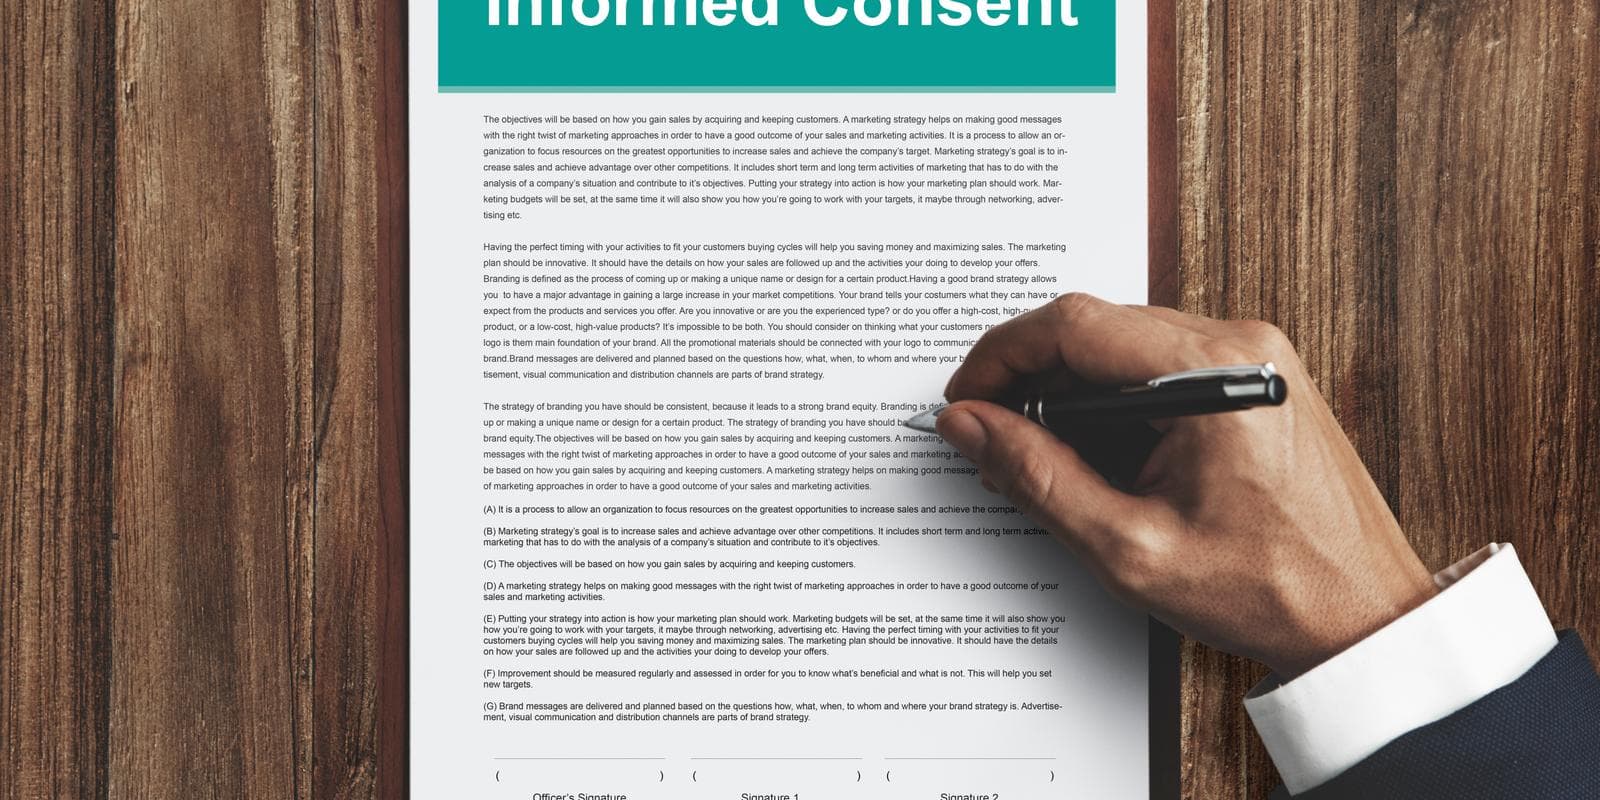 pentingnya informed consent digital